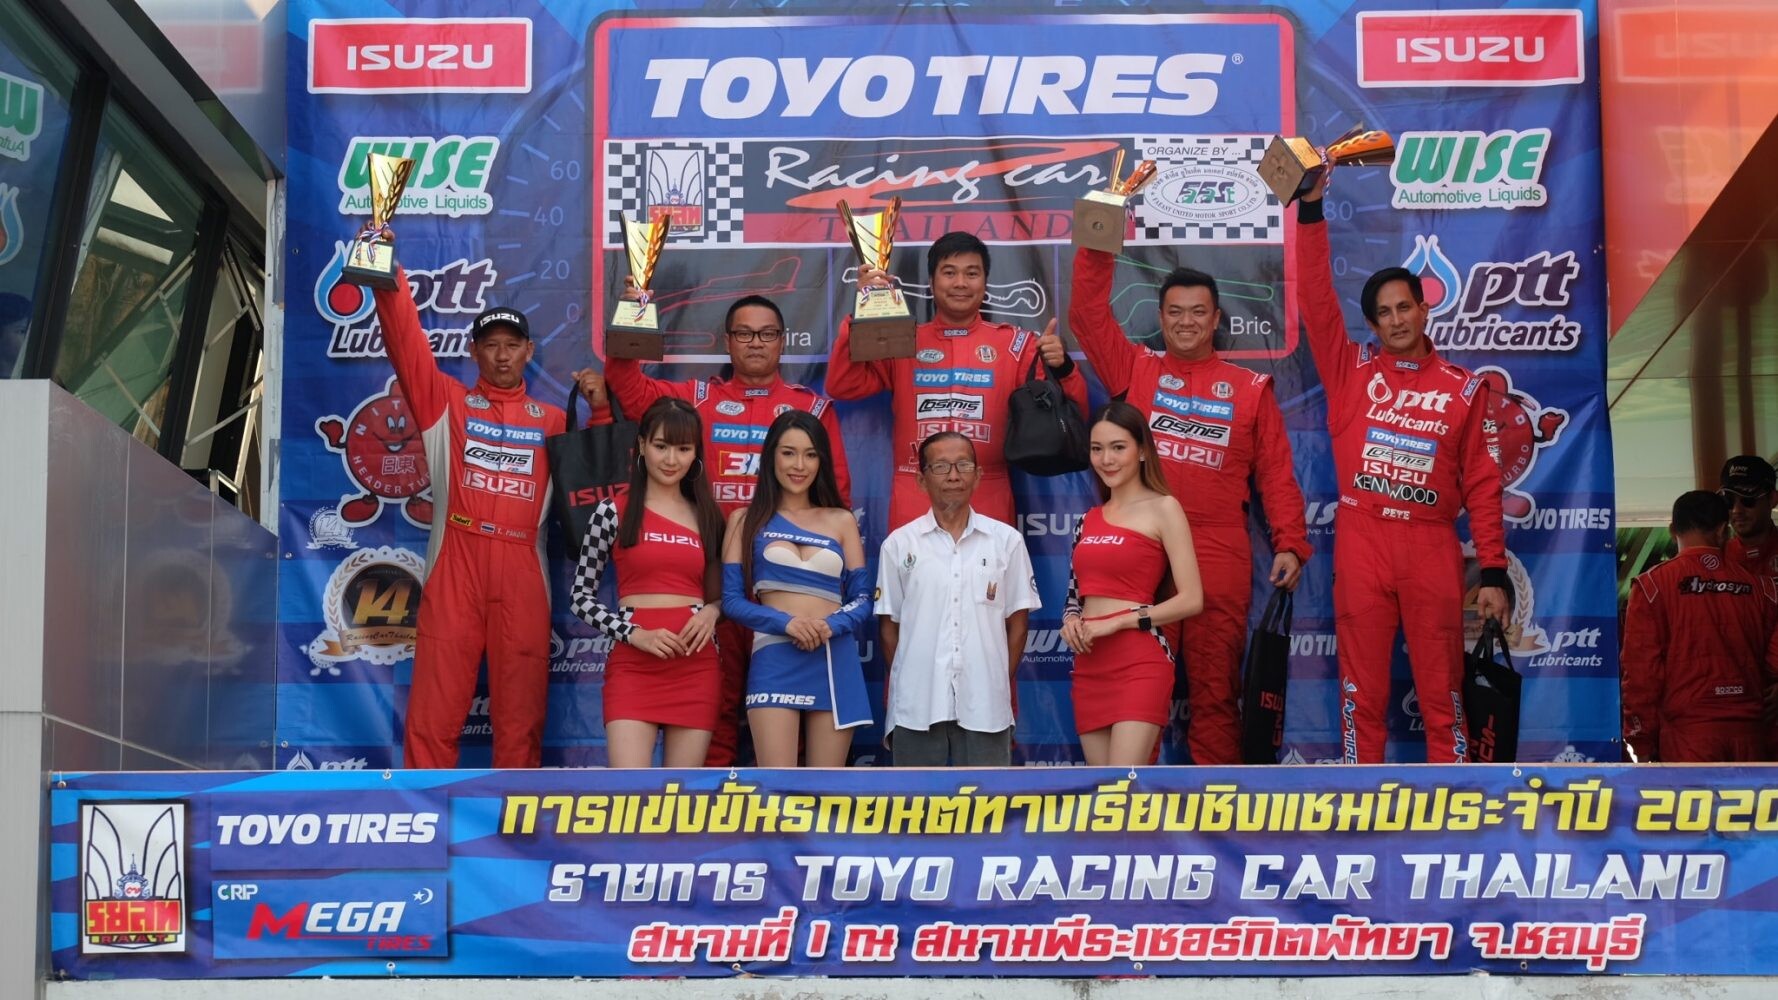 ภาพข่าว: TOYO TIRES RACING CAR THAILAND 2020 สนามที่ 1 ISUZU 1 MAKE RACE ดันกันสุดราง Toyo R888R โชว์ประสิทธิภาพ พา "สมร" ขึ้นแท่นคว้าโพเดียม